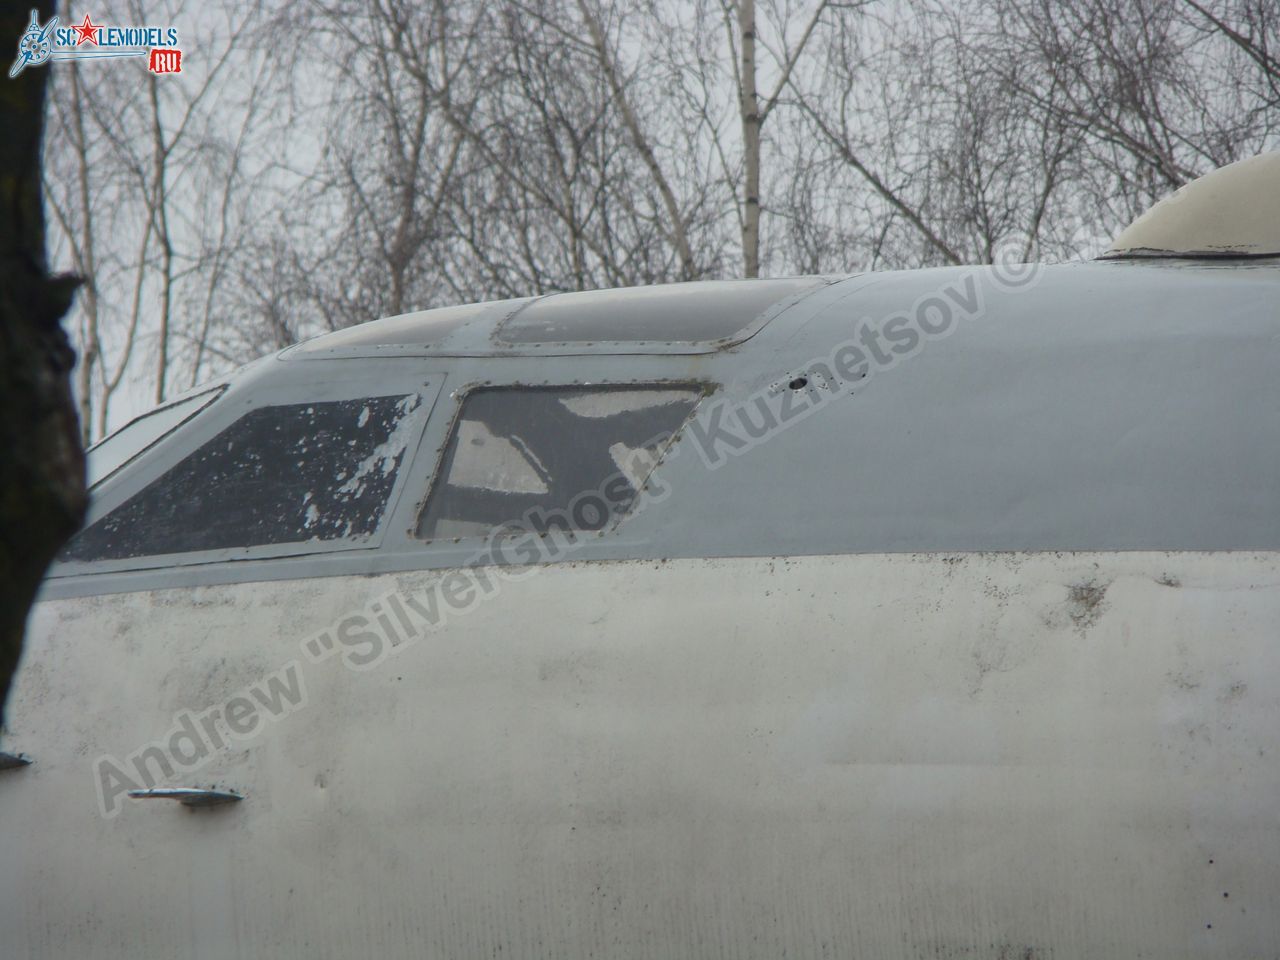 Tu-16_Badger_Smolensk_0037.jpg